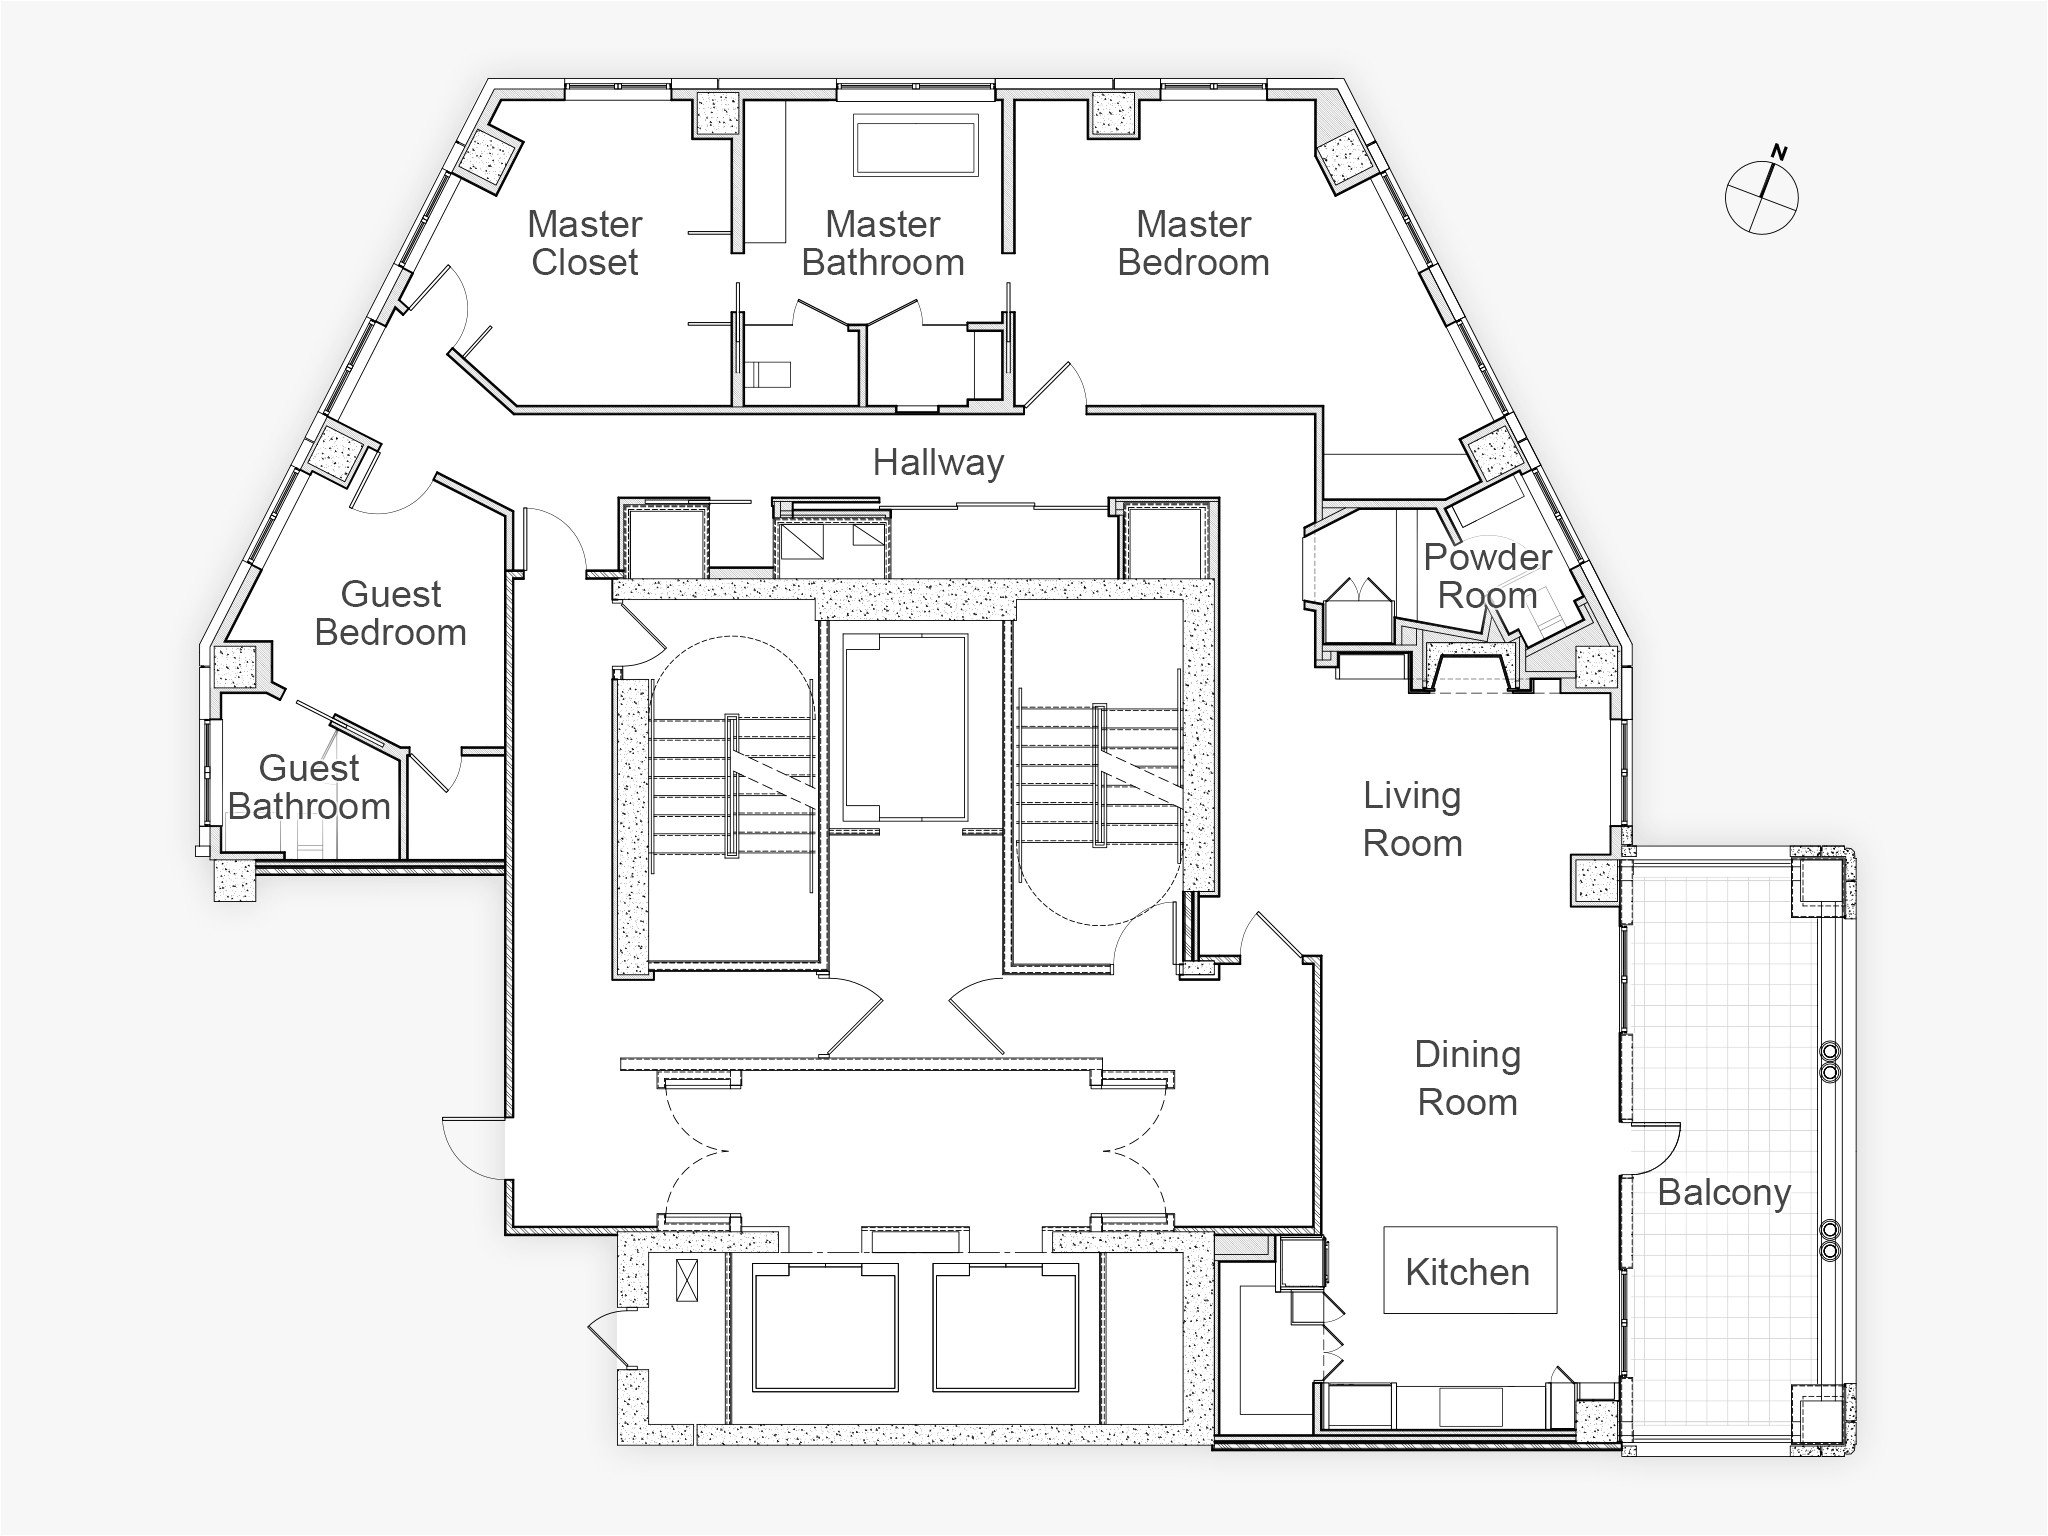 Hgtv Dream Home 05 Floor Plan Hgtv Smart Home 2017 Floor Plan Lovely Discover the Floor